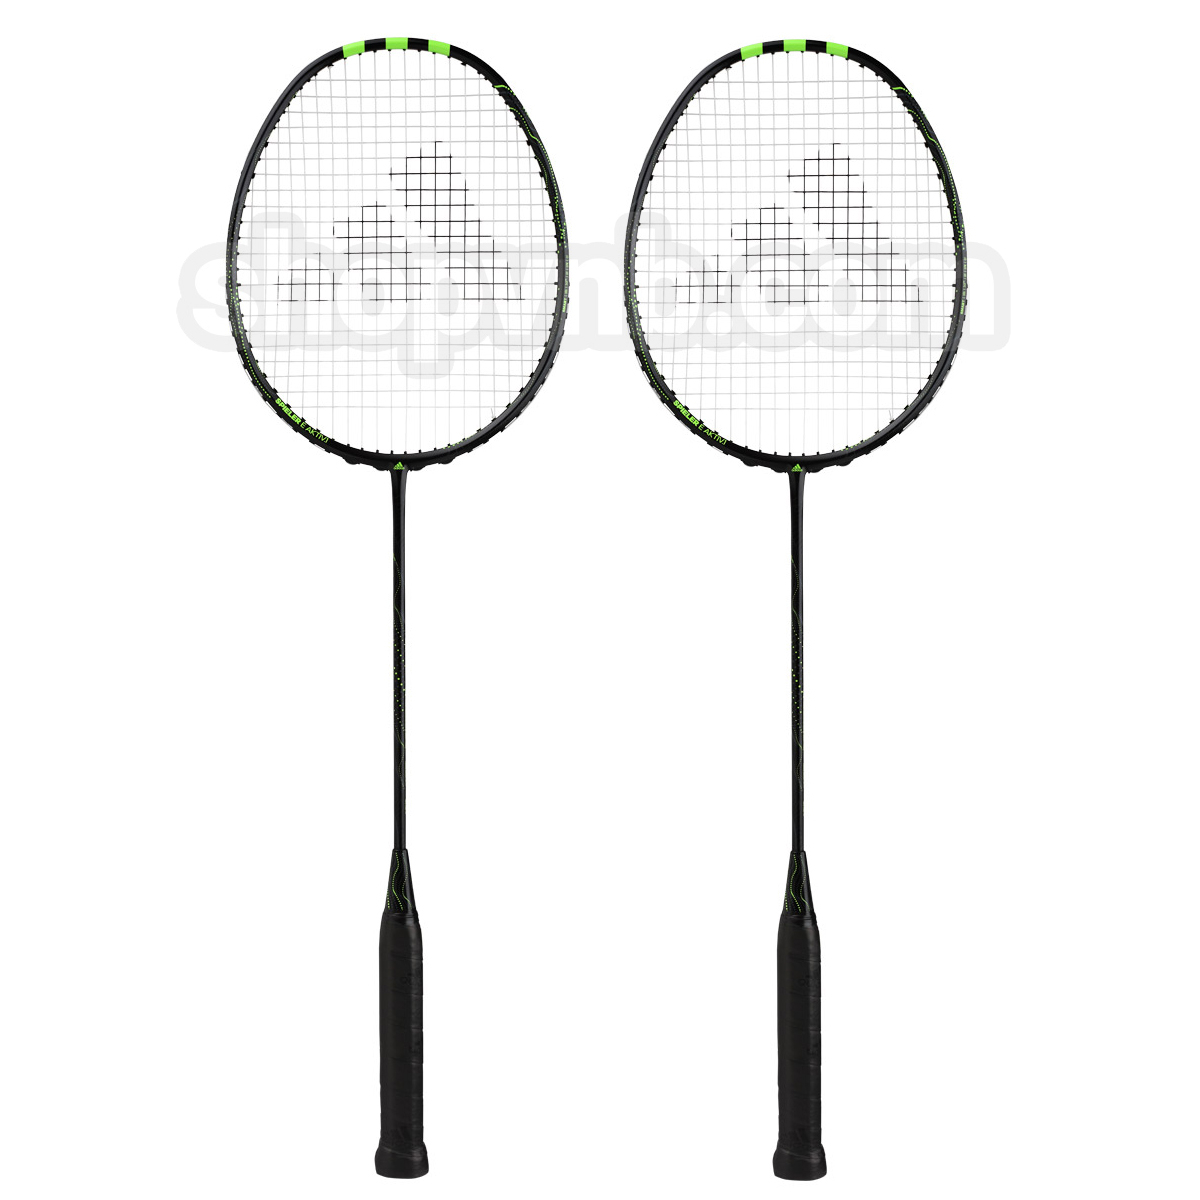 Cặp vợt cầu lông Adidas E Aktiv.1 G5 - Đen xanh chuối chính hãng